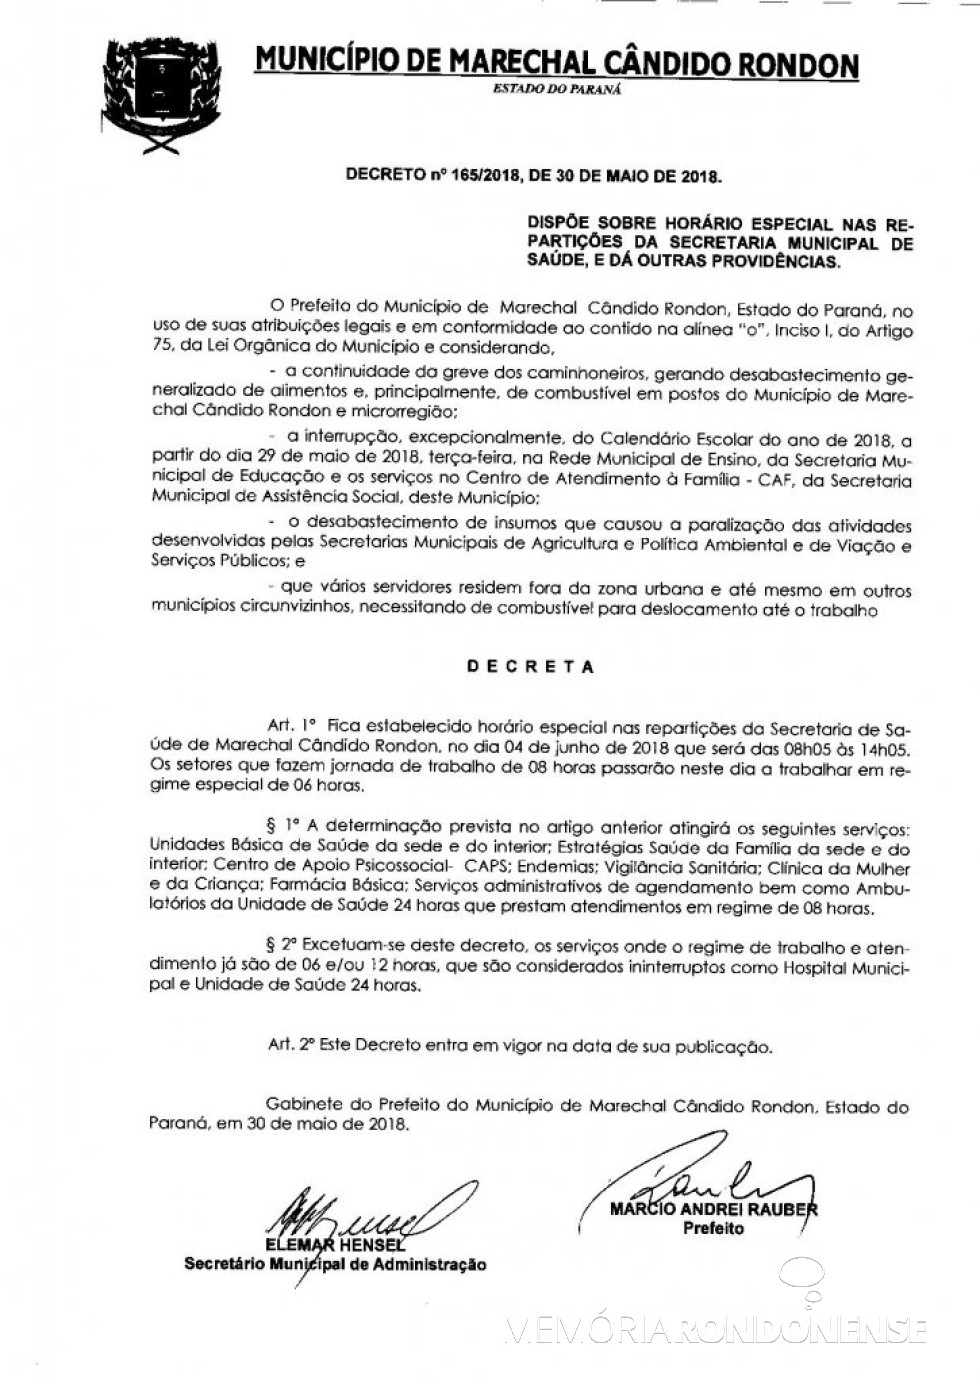 Decreto nº 165/2018 que alterou o horário de funcionamento das repartições públicas municipais da Prefeitura Municipal de Marechal Cândido Rondon .
Imagem:  PM - Marechal Cândido Rondon - FOTO 10 -
